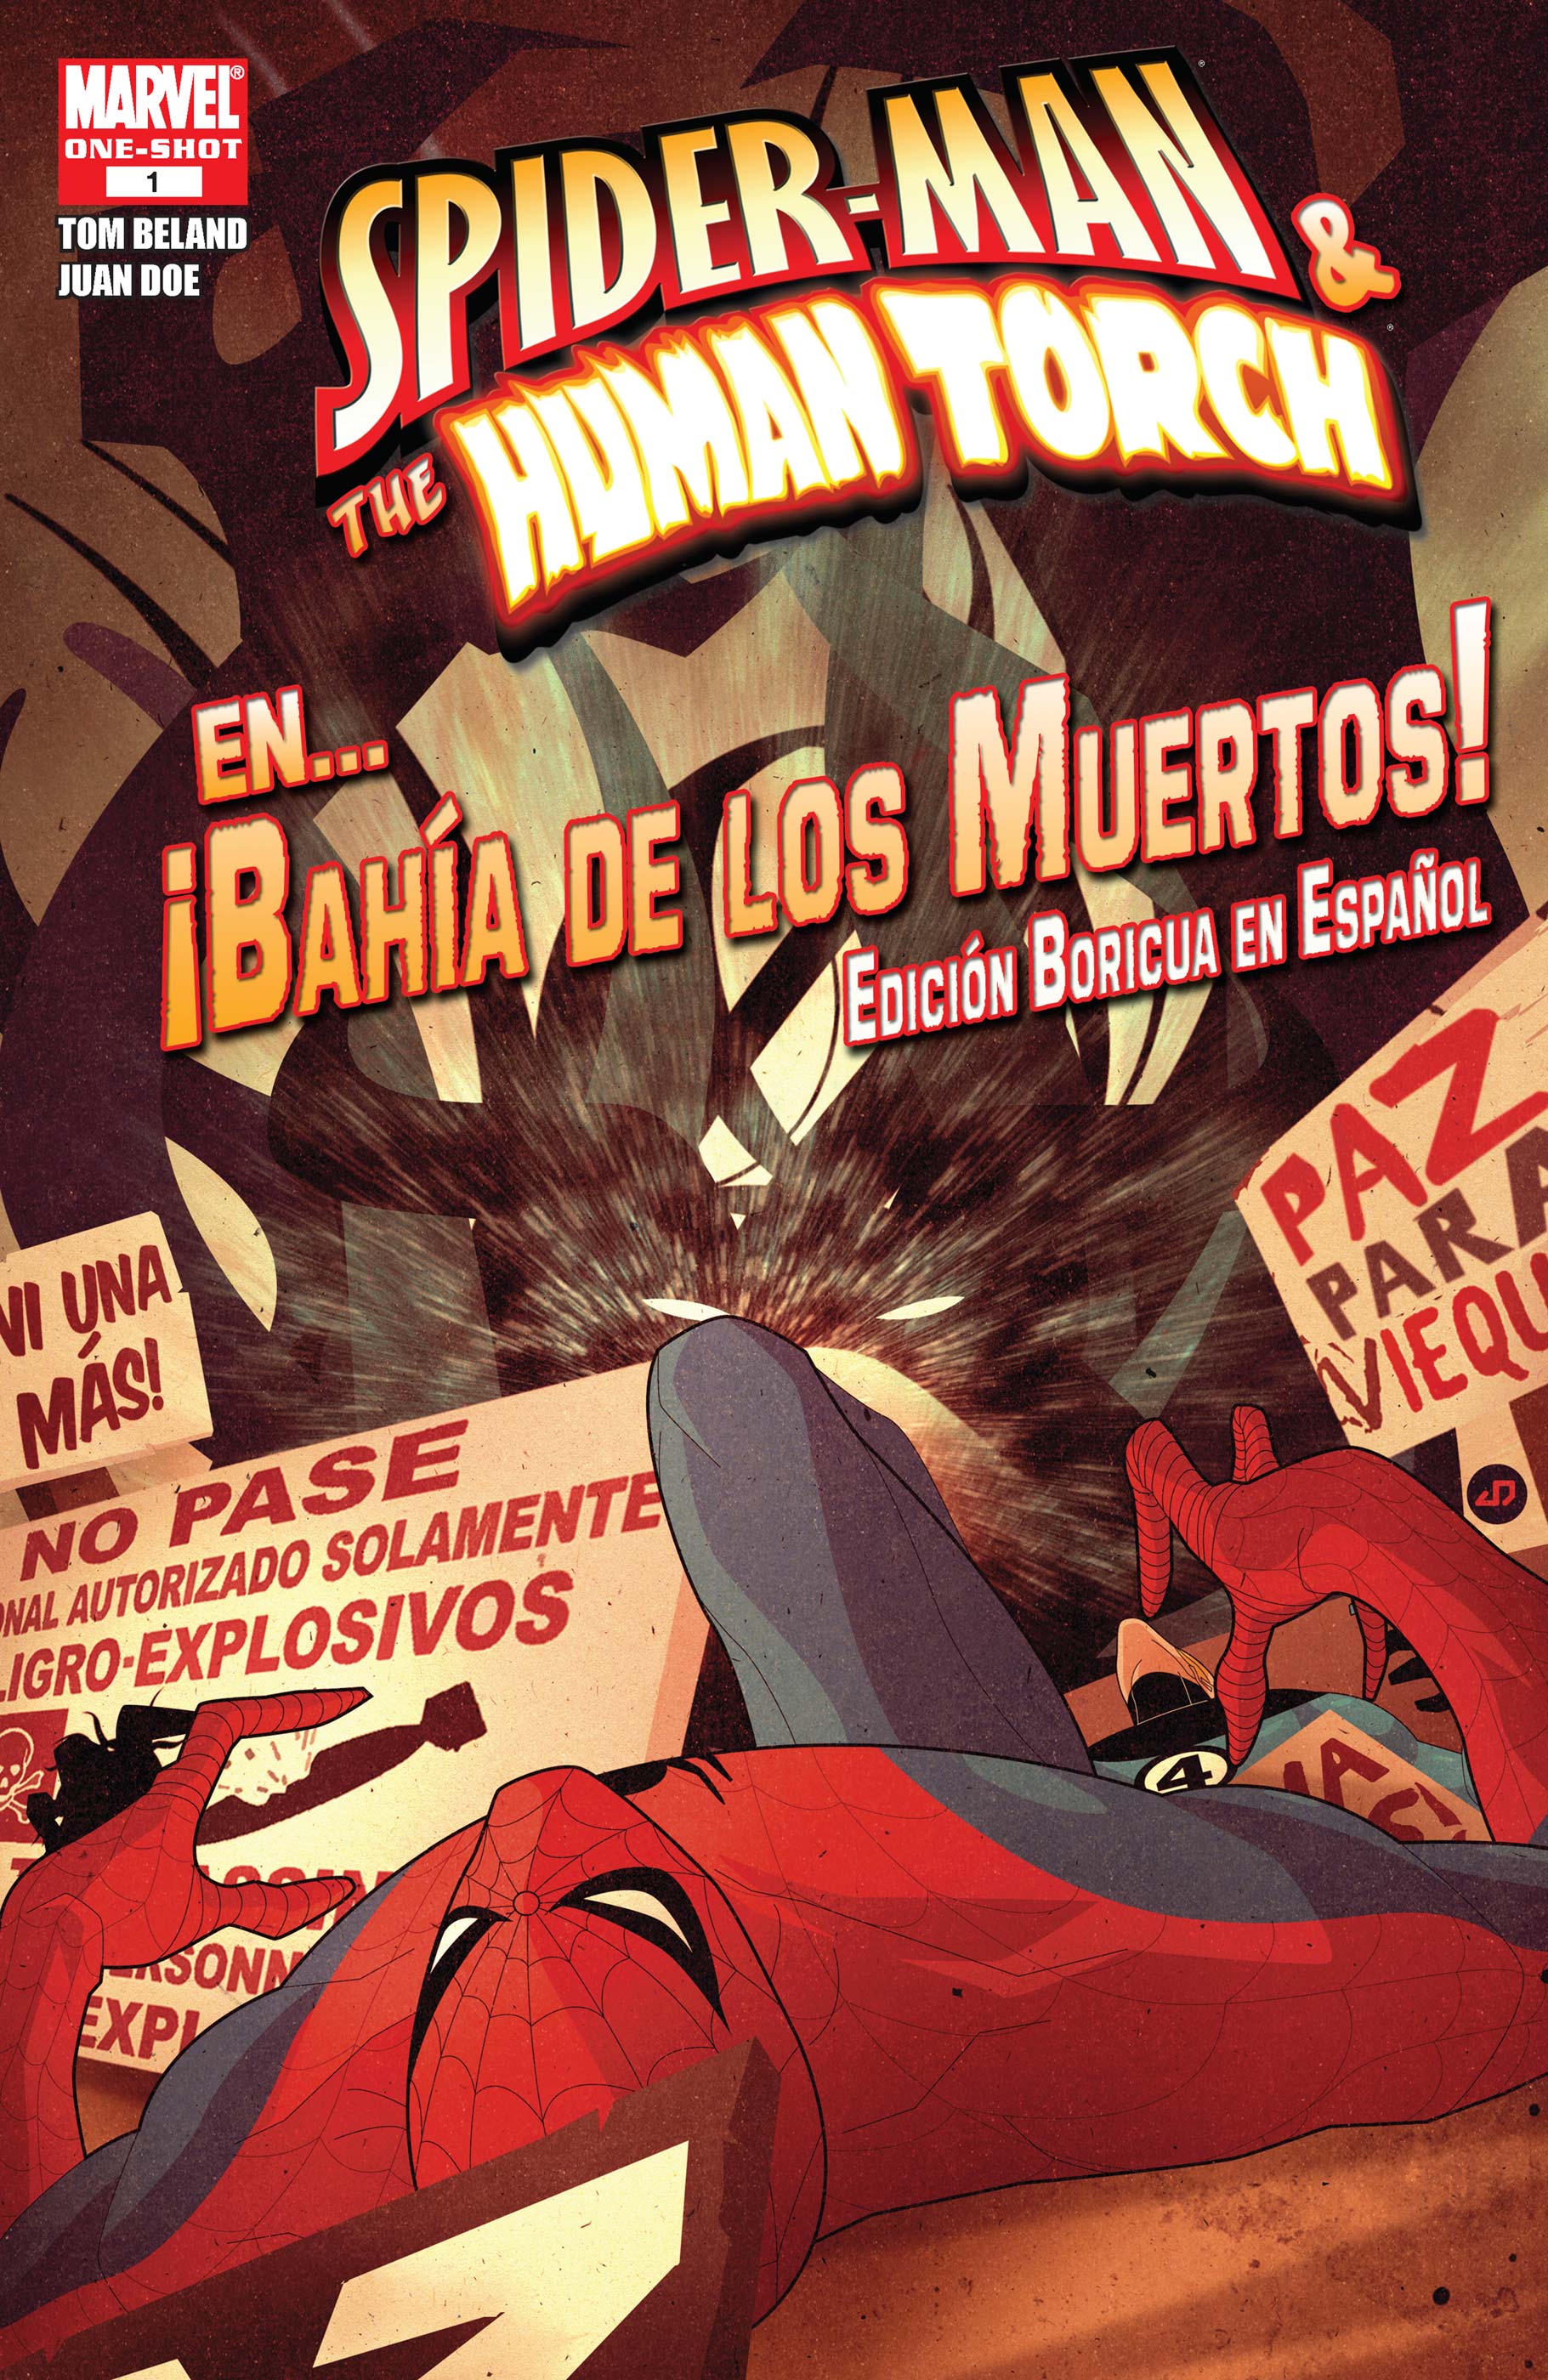 SPIDER-MAN & THE HUMAN TORCH EN...BAHIA DE LOS MUERTOS! EDICION BORICUA EN ESPANOL (2009) #1